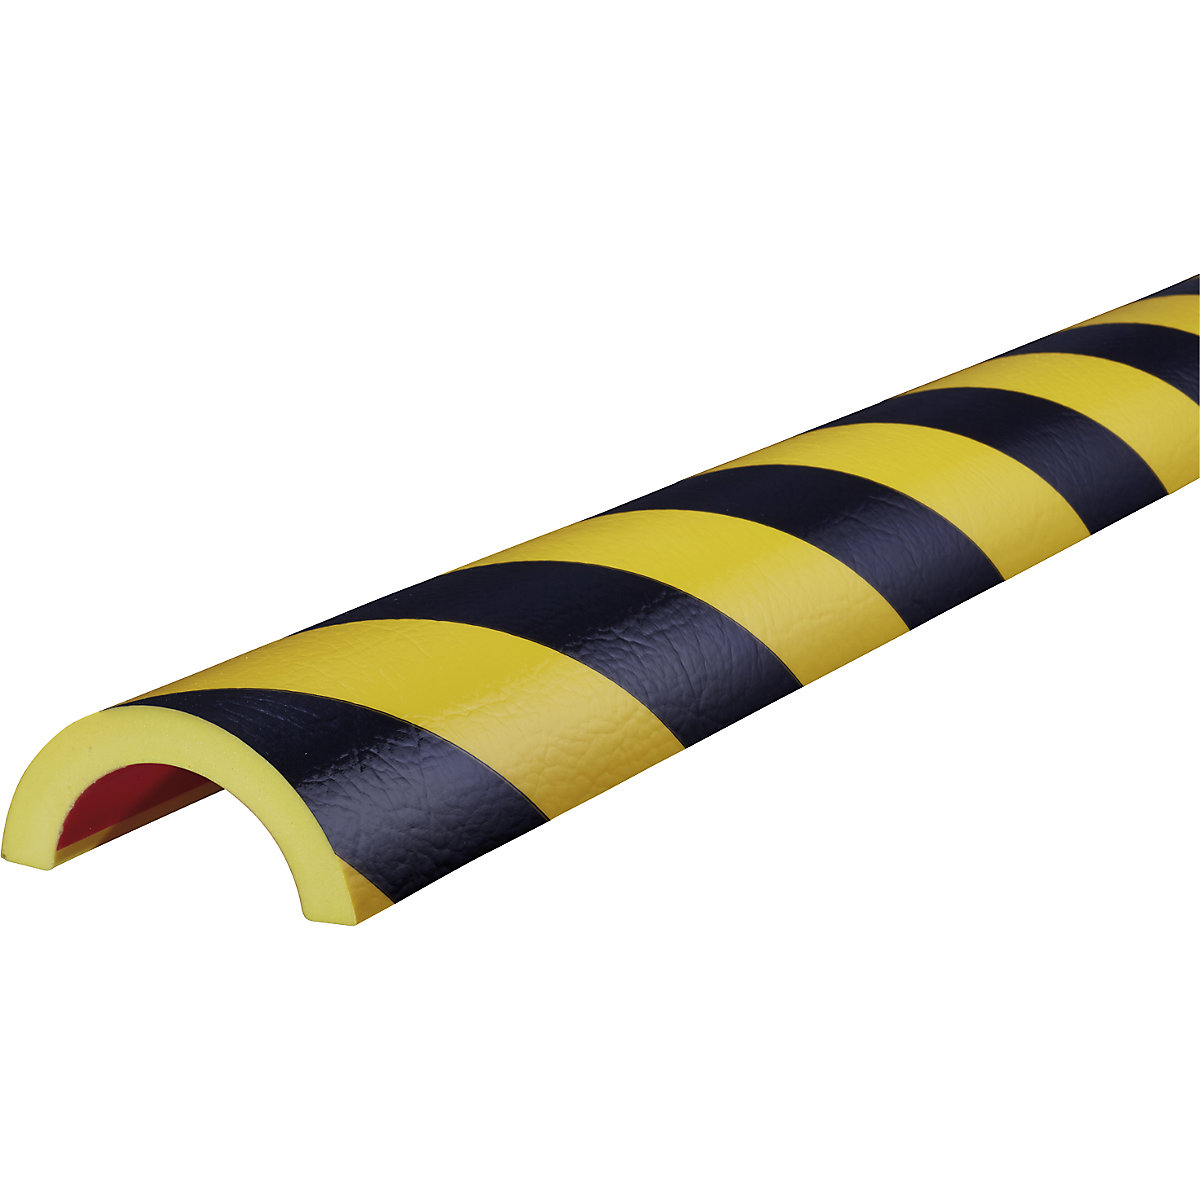 Knuffi®-buisbescherming – SHG, type R50, stuk van 1 m, zwart/geel-10